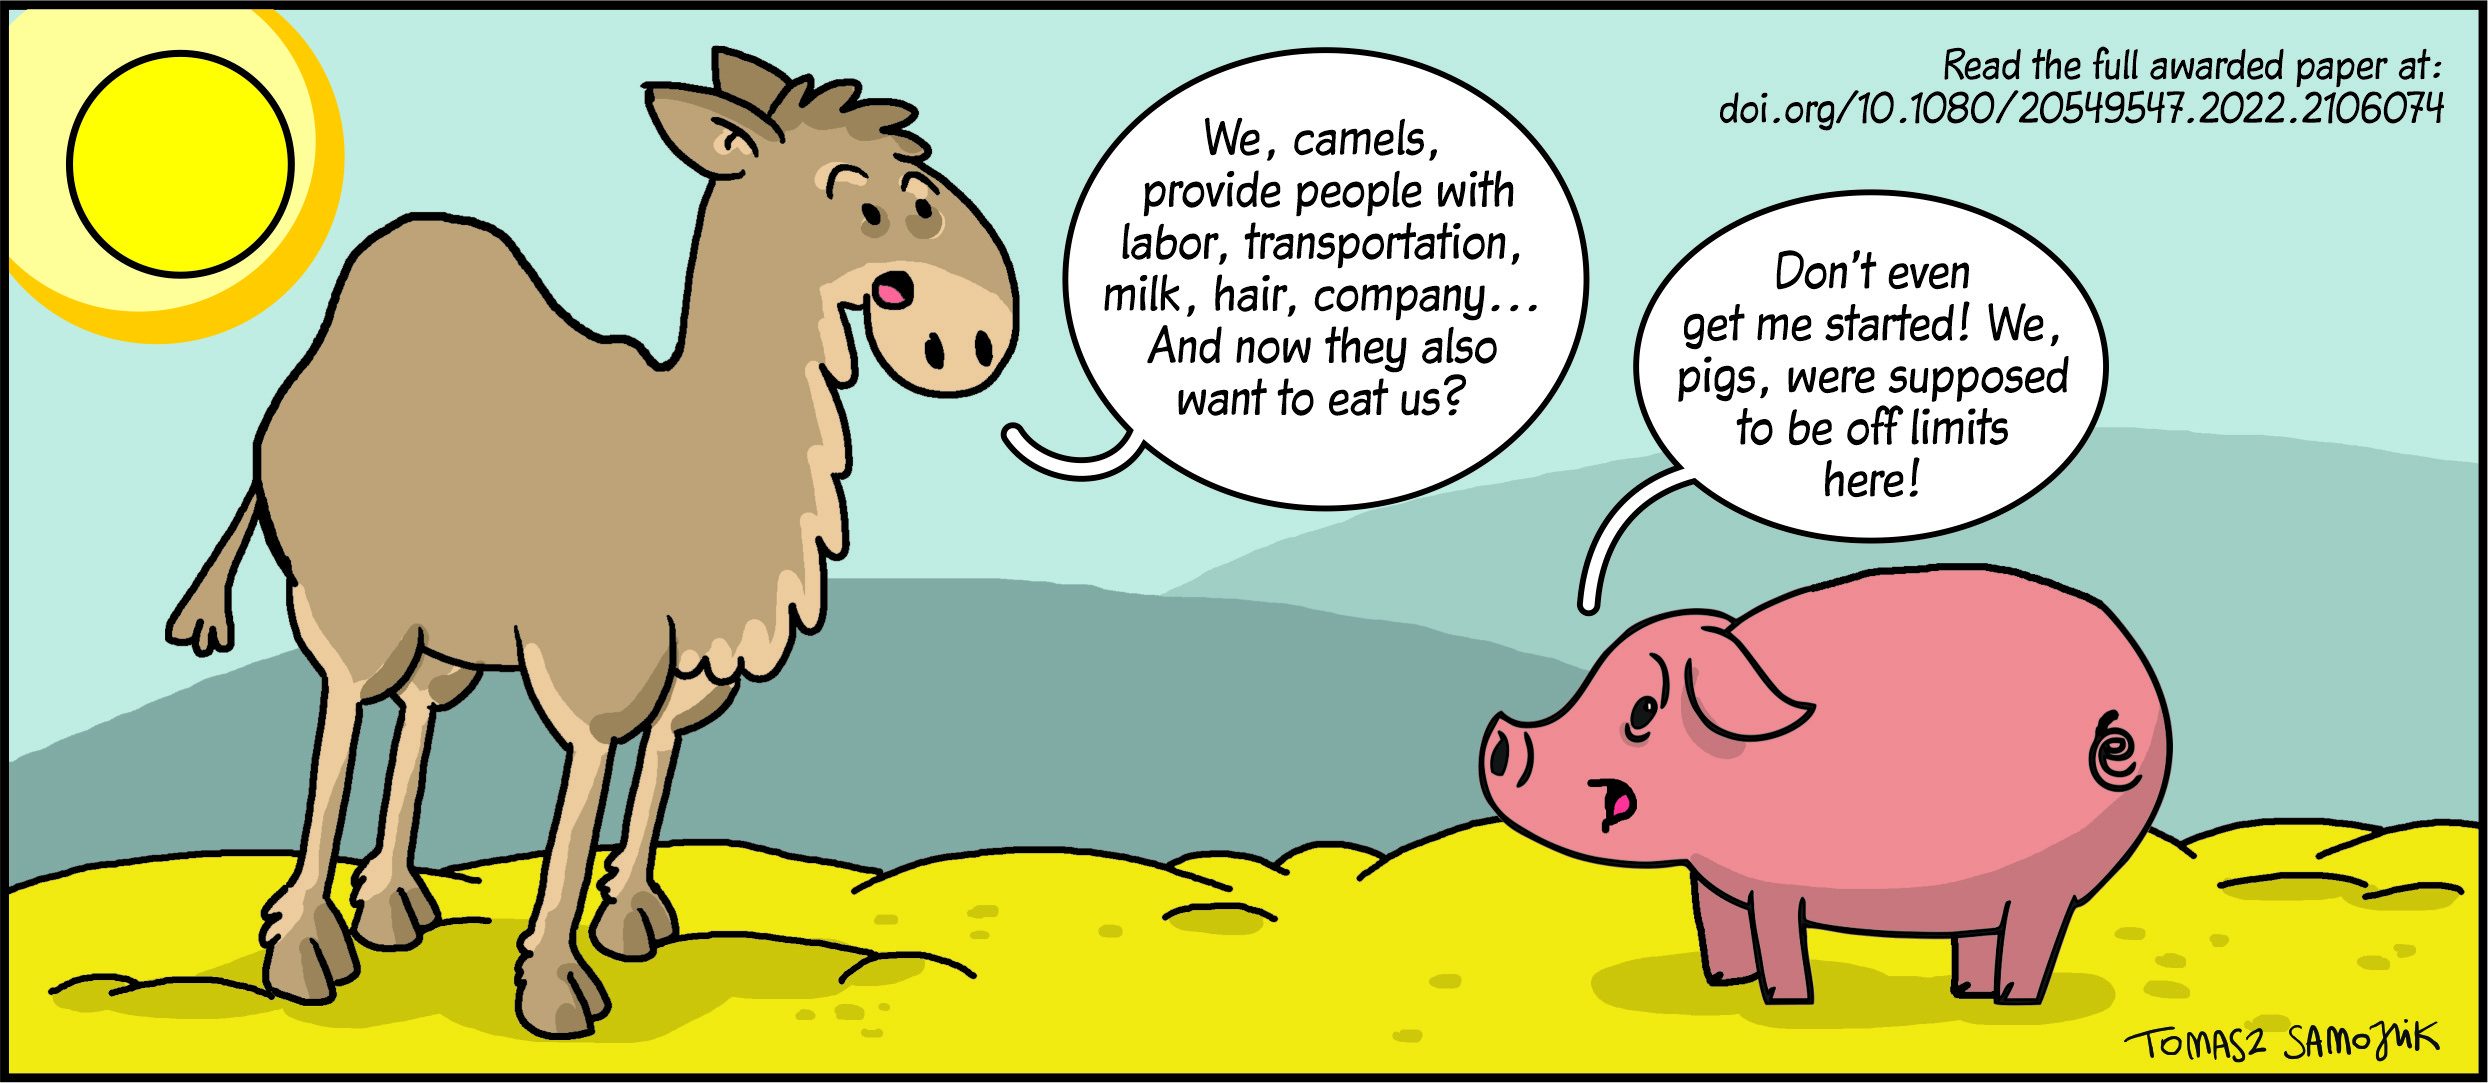 Ein Bildausschnitt mit einer Kammel und einem Schwein, die eine Diskussion führen